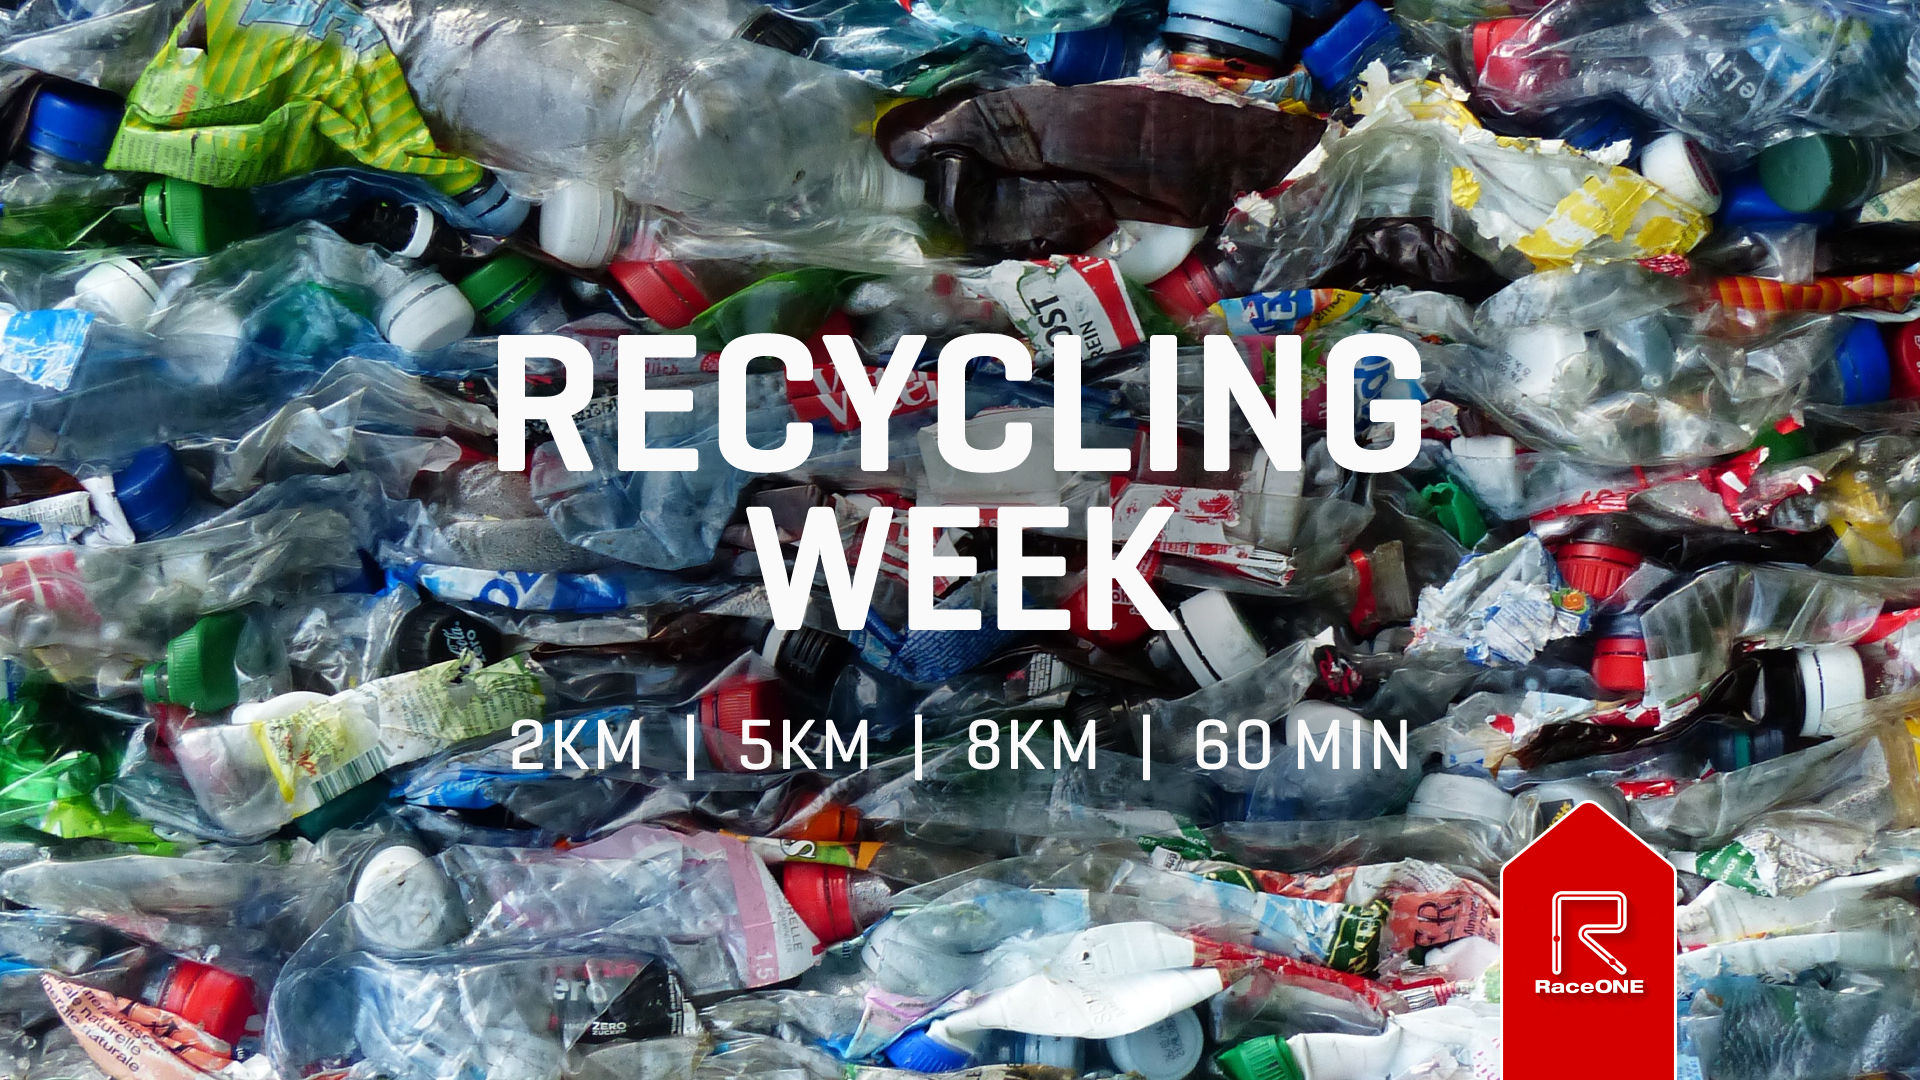 Recycle Week - 8km